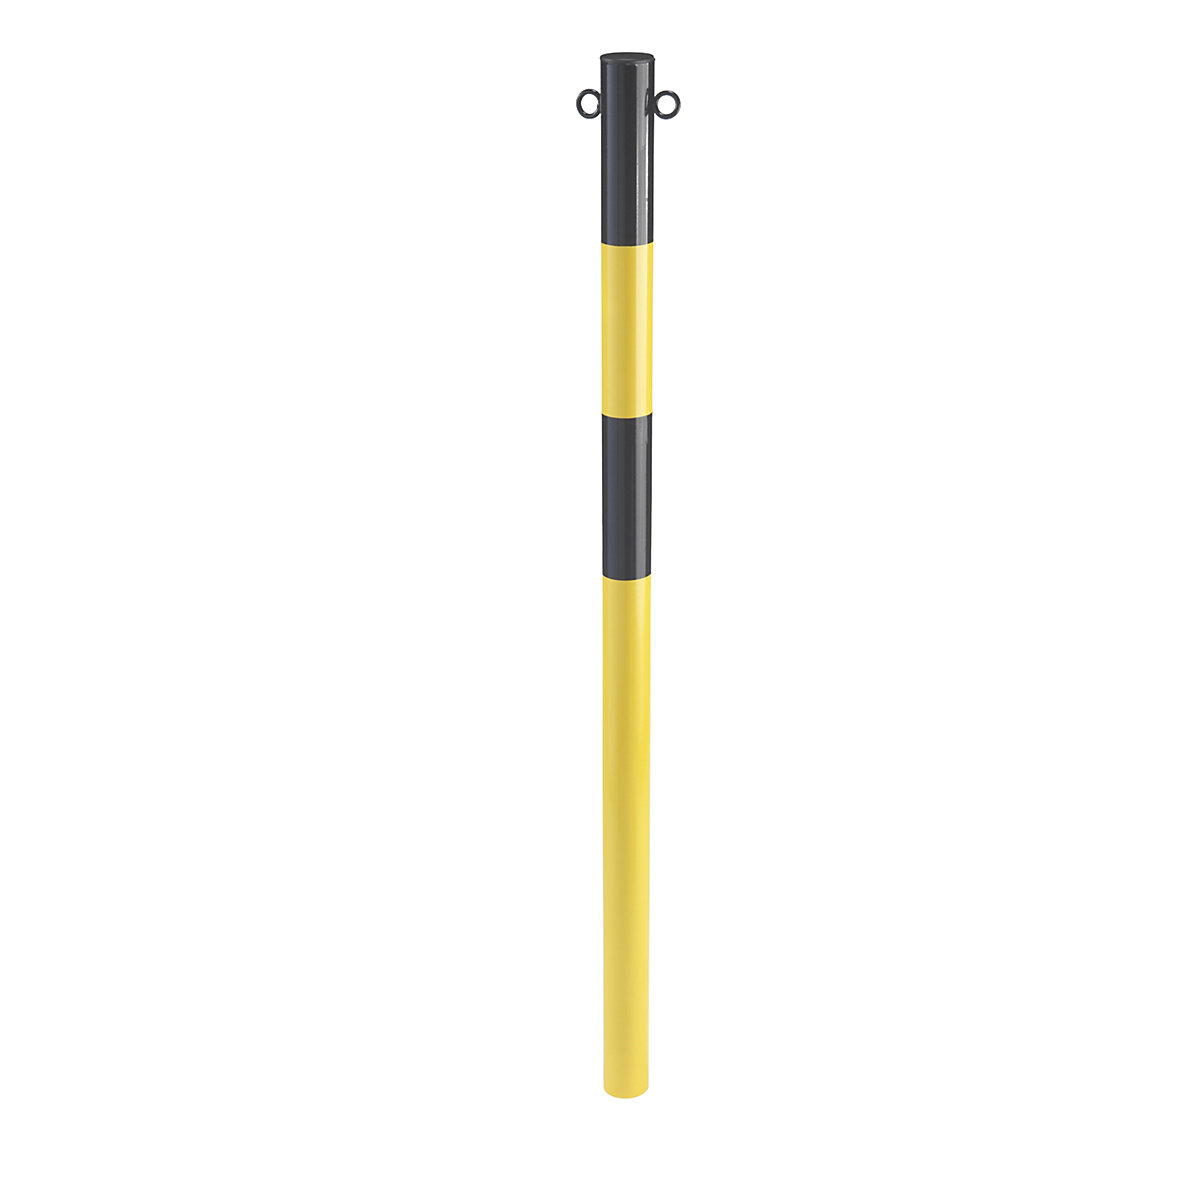 Stup za ograđivanje od čelične cijevi, za betoniranje, Ø 60 mm, u žutoj / crnoj boji, pocinčan i lakiran-3